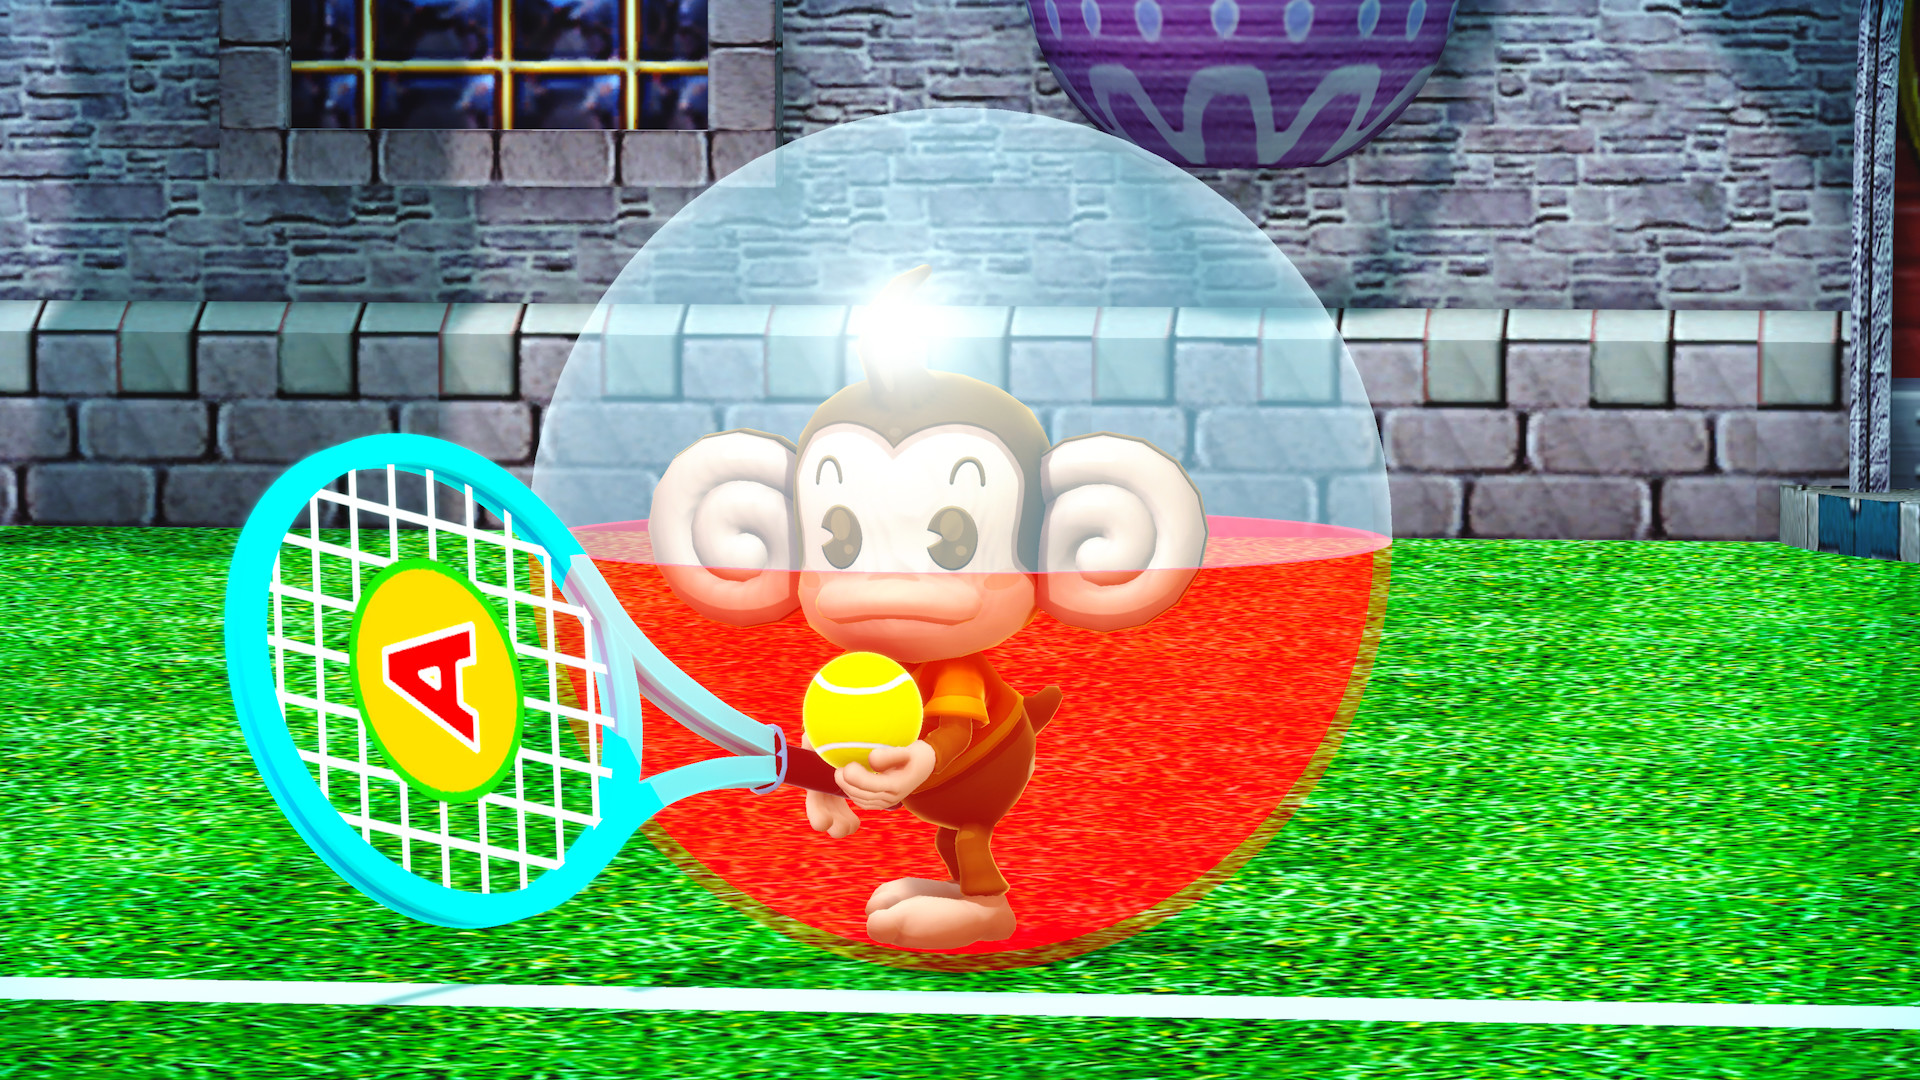 滚动搭乘小猴子的球冲向终点，操作非常简单的欢乐游戏系列最新作